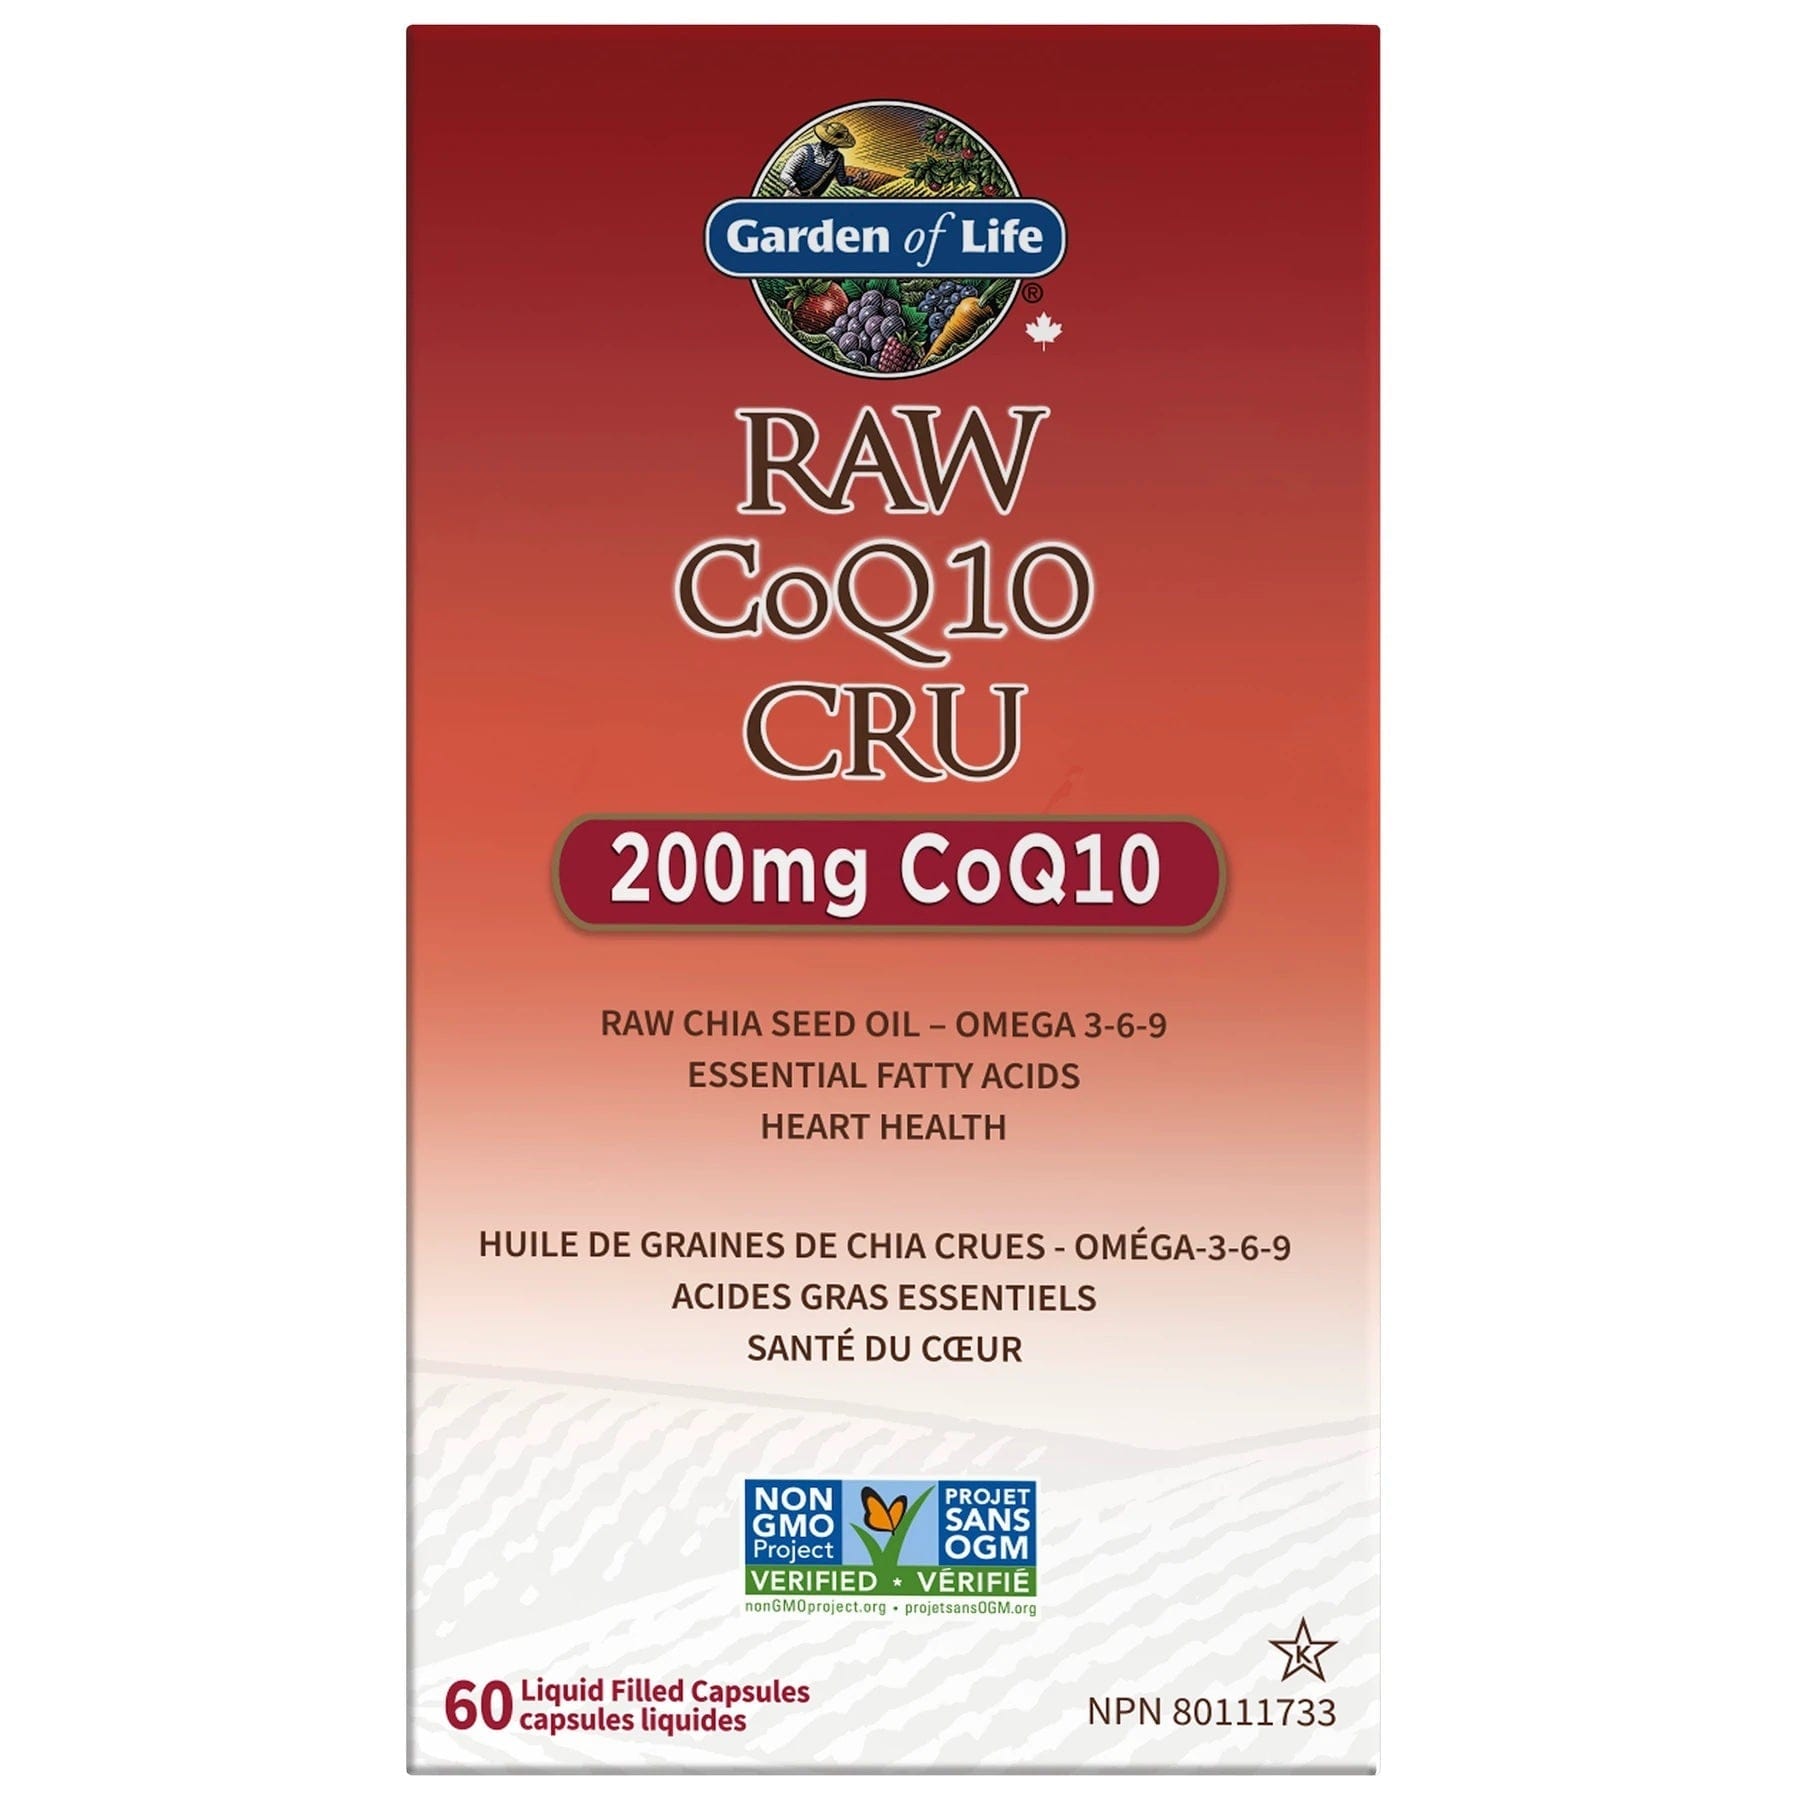 GARDEN OF LIFE Suppléments COQ 10 raw 200mg 60caps
DATE DE PÉREMPTION : 31 OCTOBRE 2024